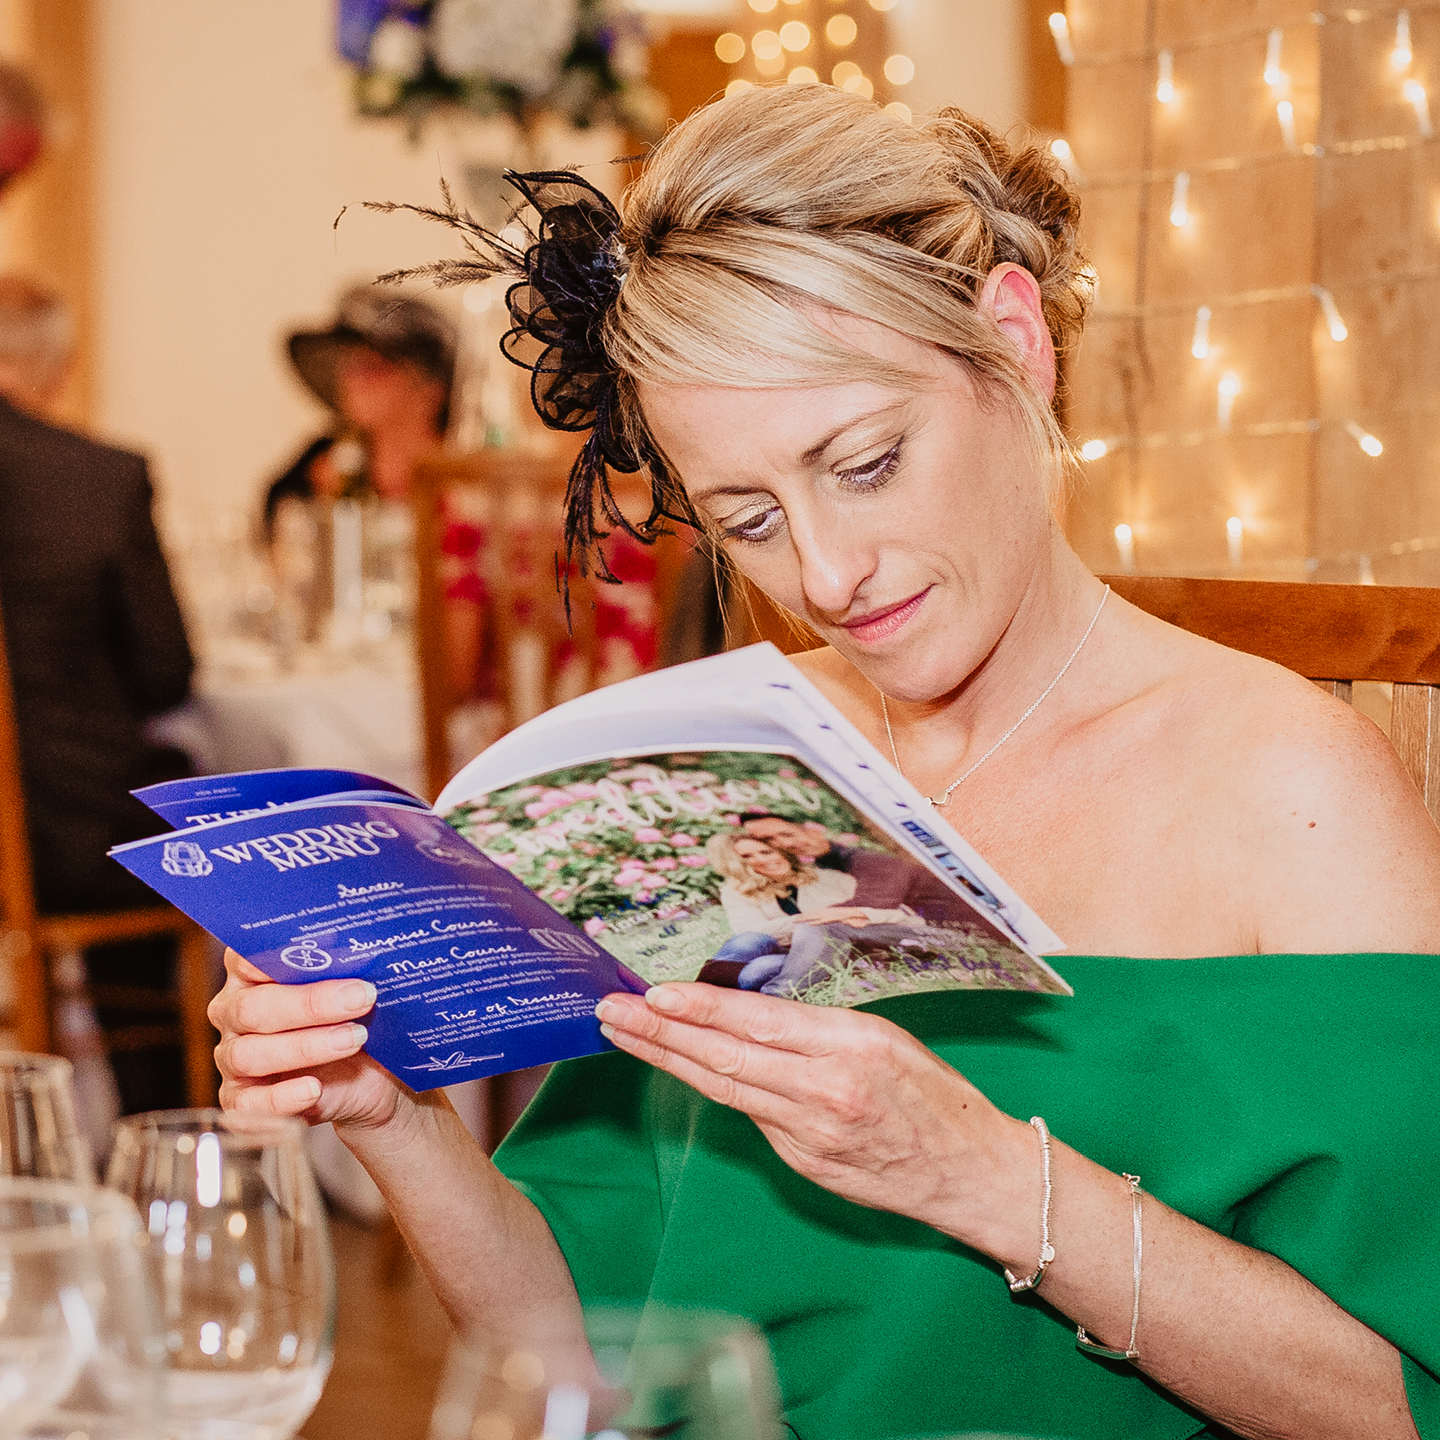 unique wedding ideas 2019 personalised wedding magazine